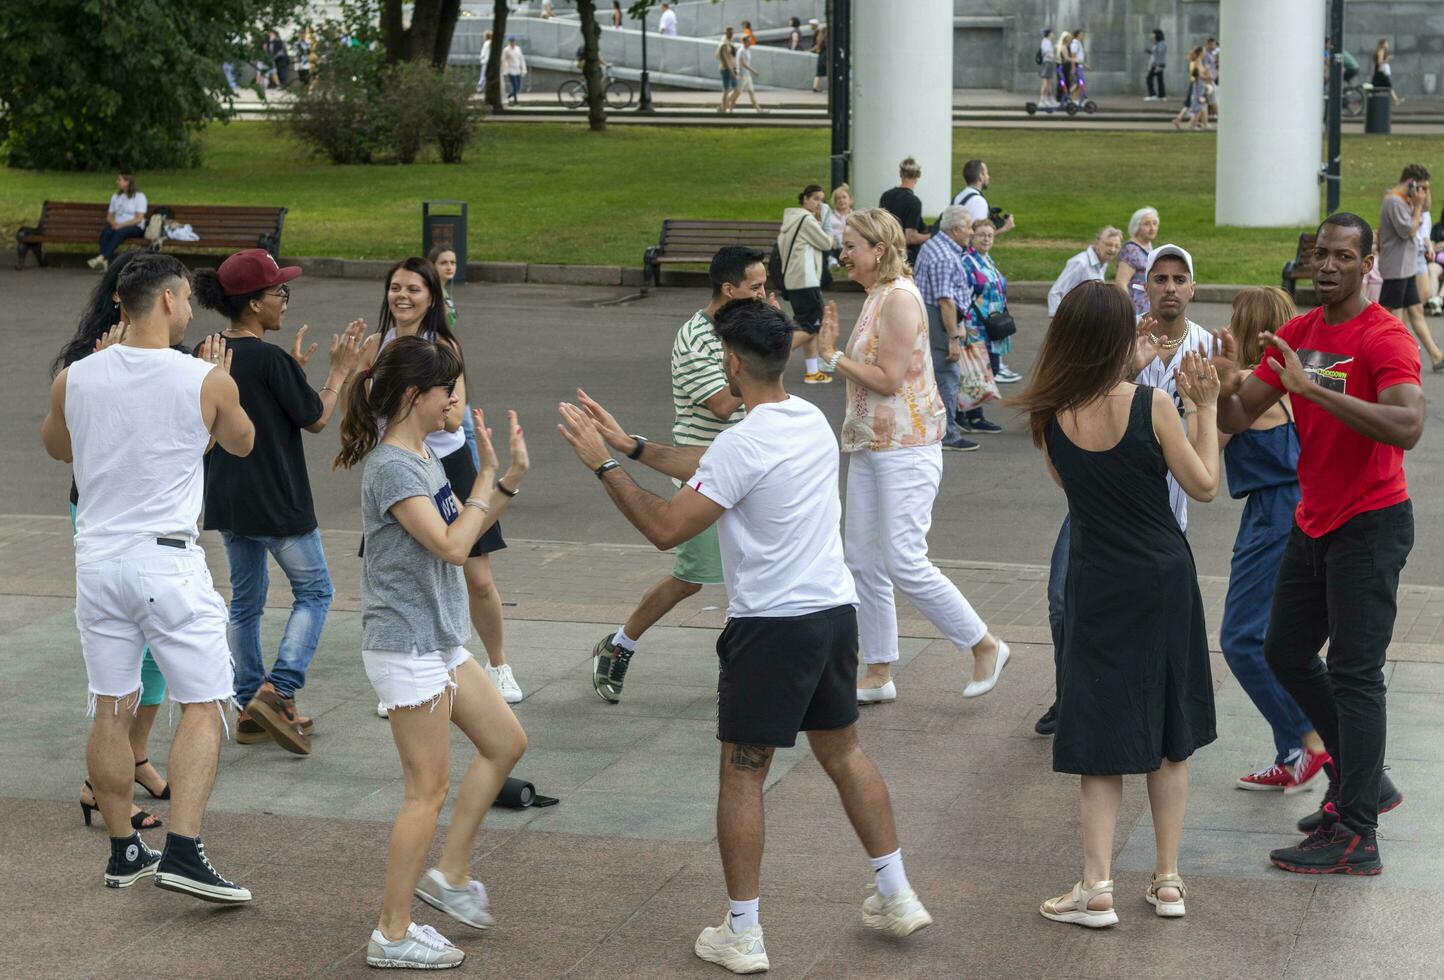 Moskou, Rusland - 07.09.2023 - mensen genieten van dag uit in de gorky park. buitenshuis foto